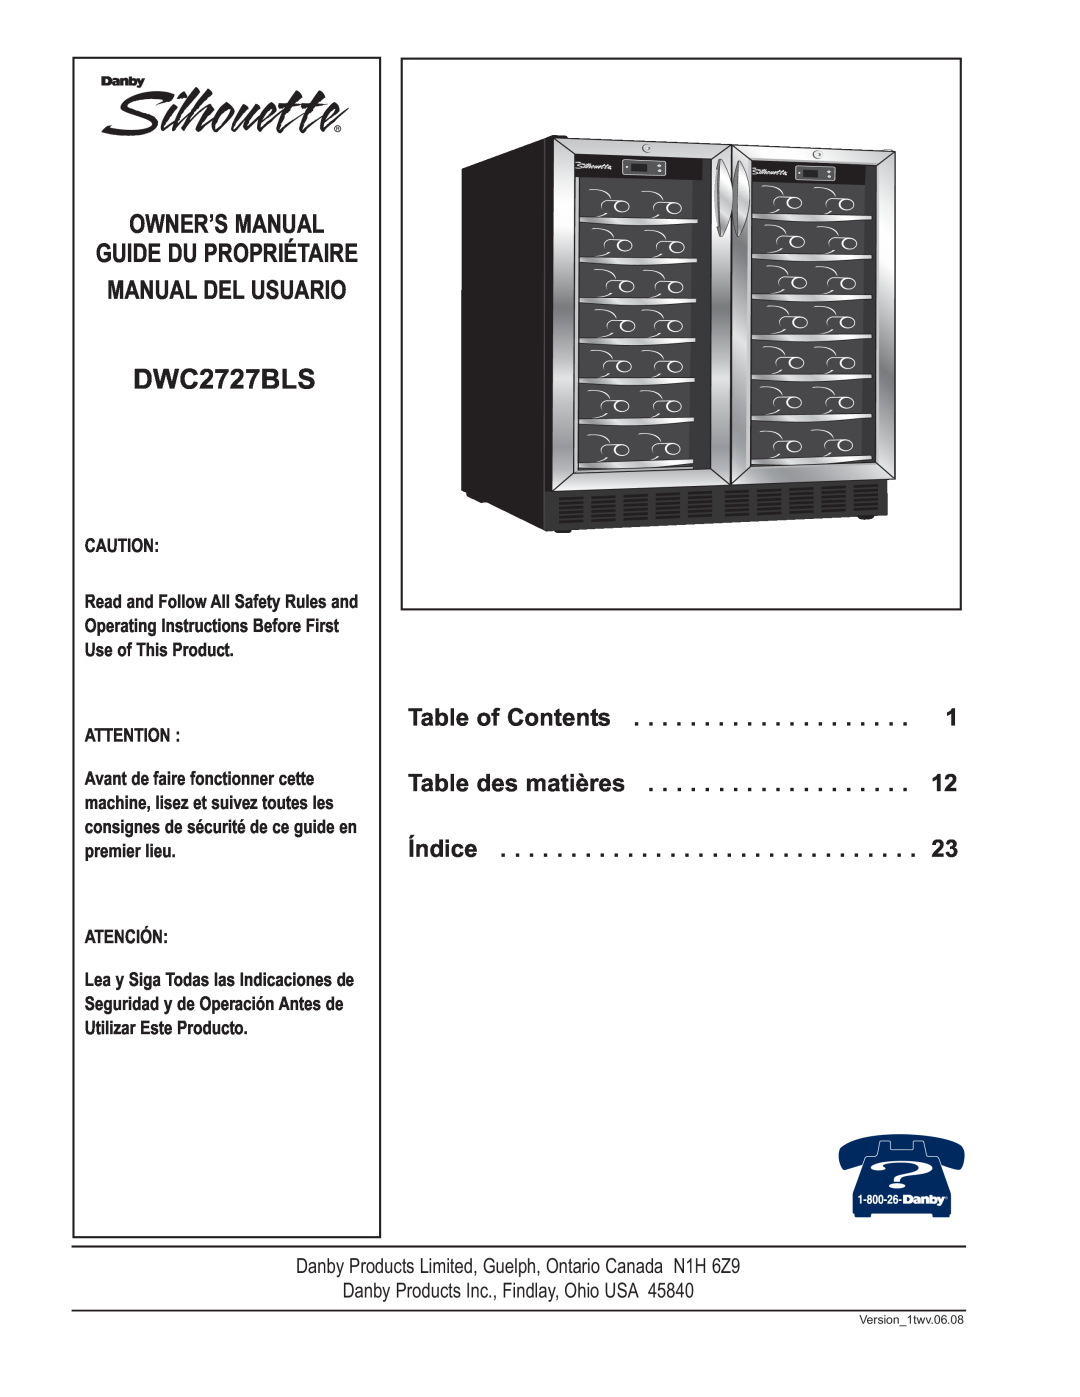 Danby DWC2727BLS owner manual Table of Contents, Table des matières, Índice, Guide Du Propriétaire Manual Del Usuario 